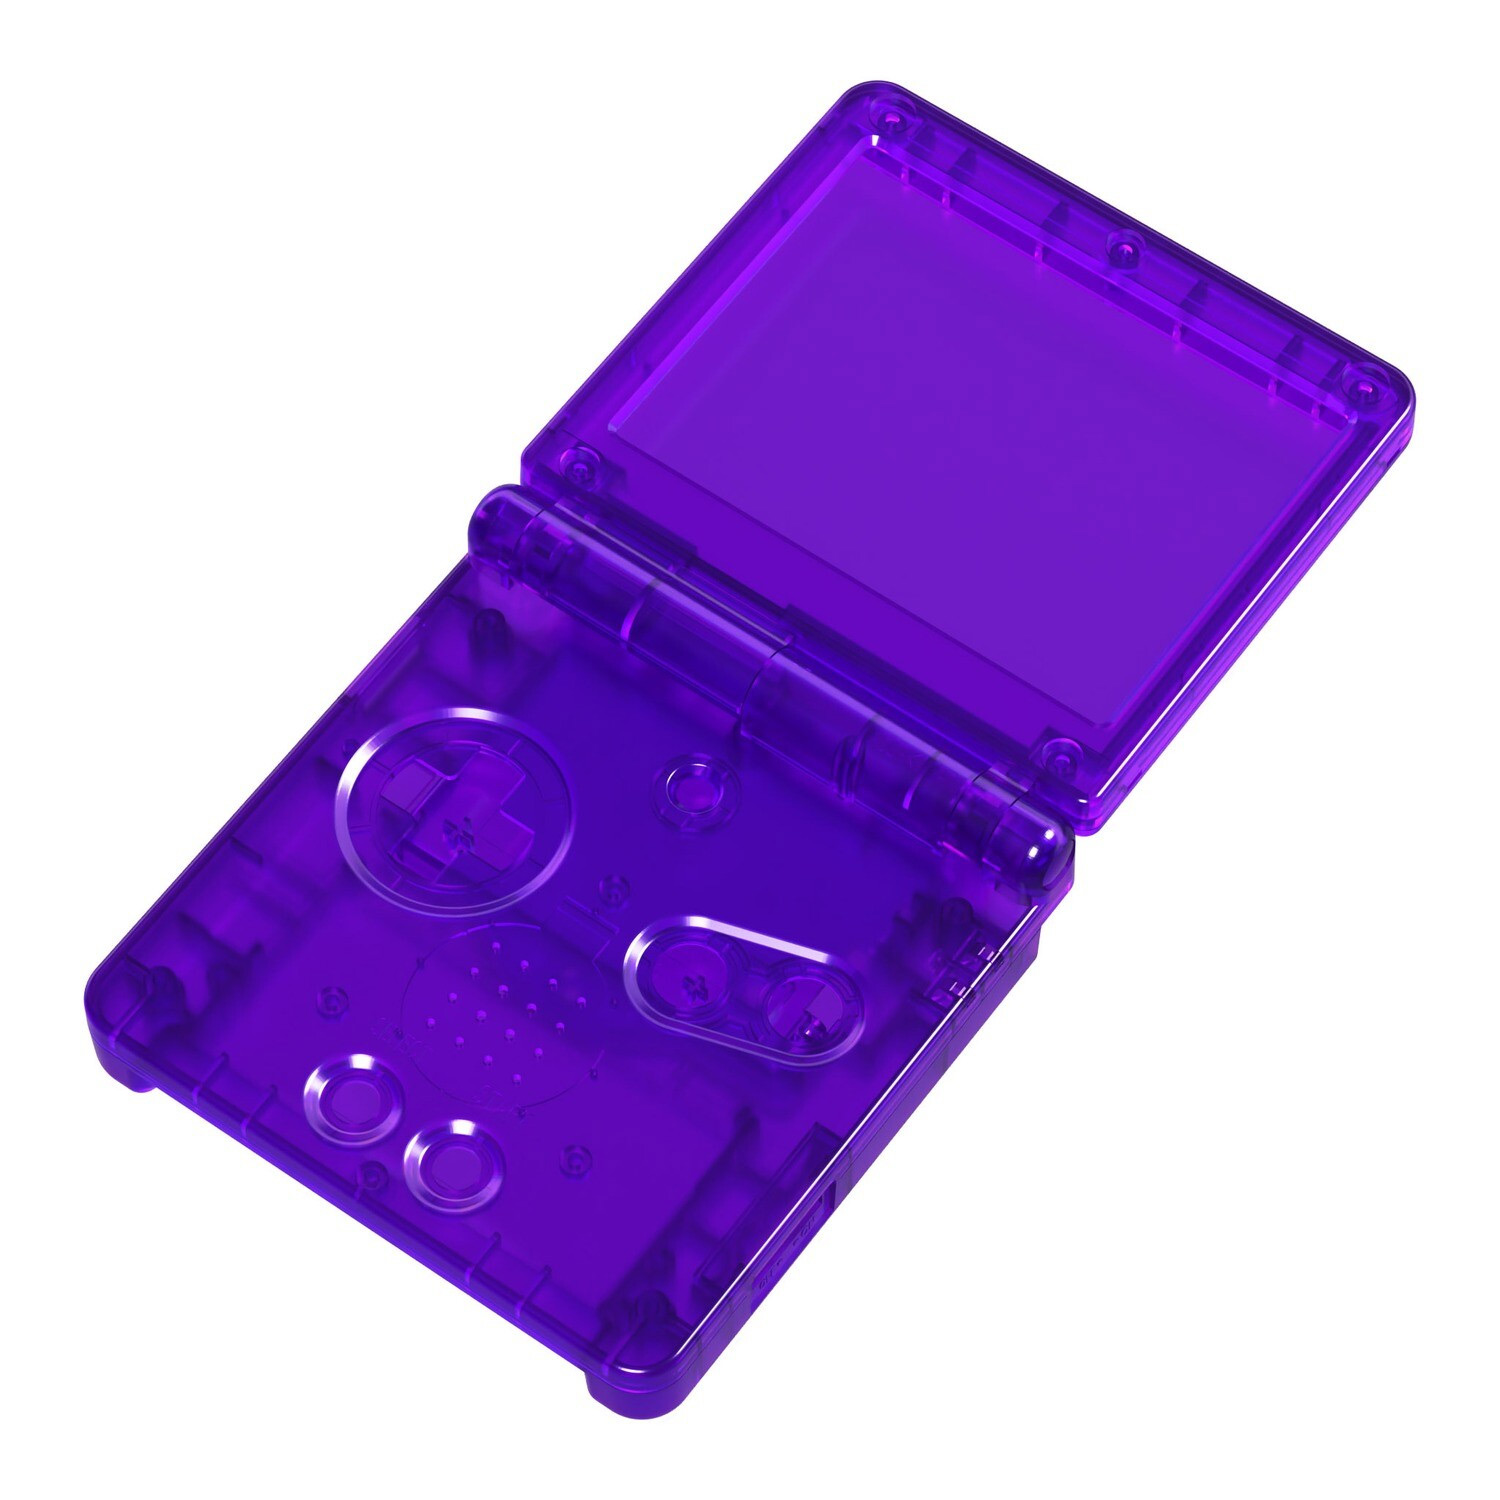 Gehäuse (Clear Purple) für Game Boy Advance SP